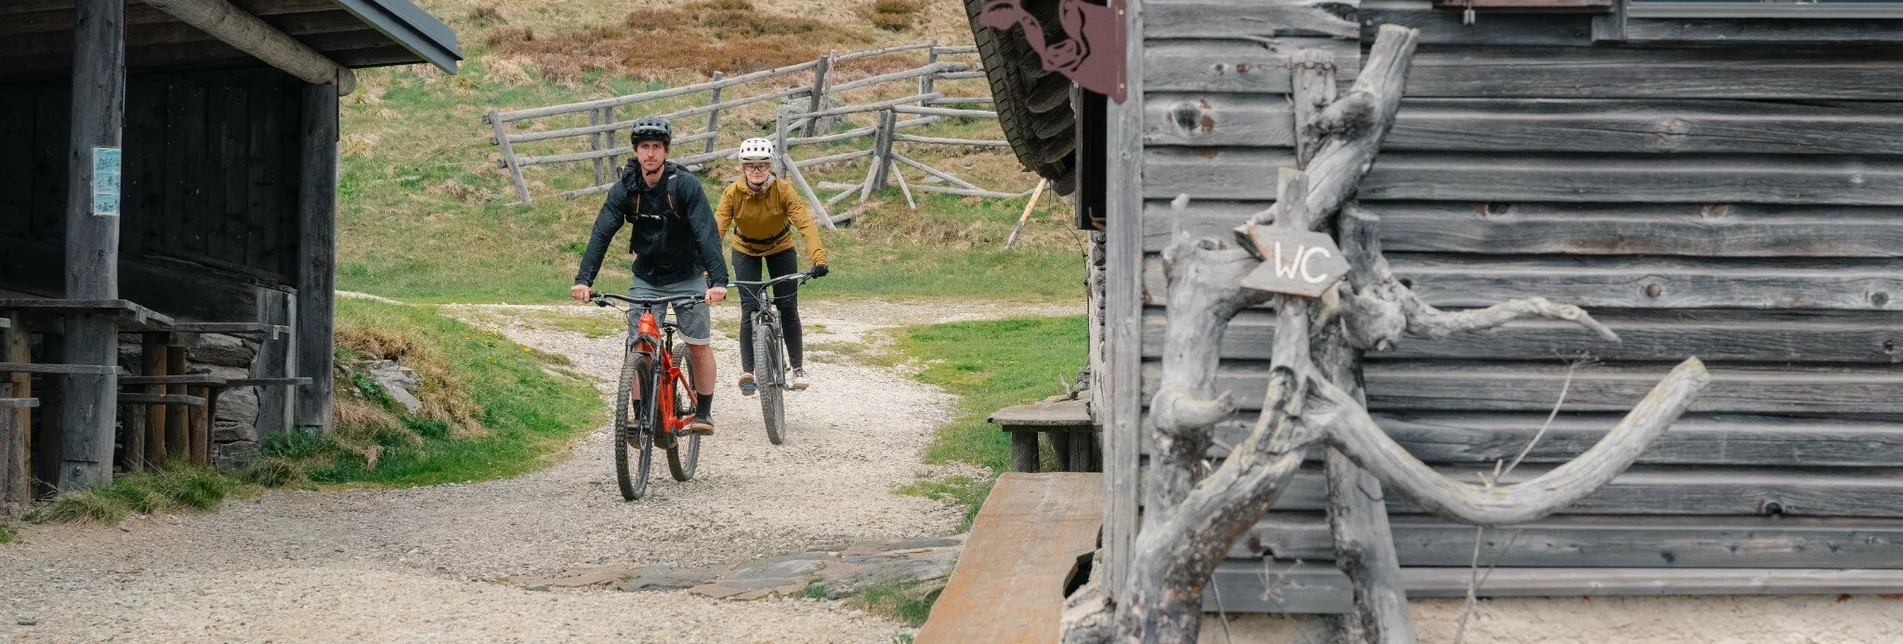 Mountain Biking Styrian Wexl Trails - Dorfstatt Route - Touren-Impression #1 | © Verein Tourismusentwicklung Steirischer Wechsel